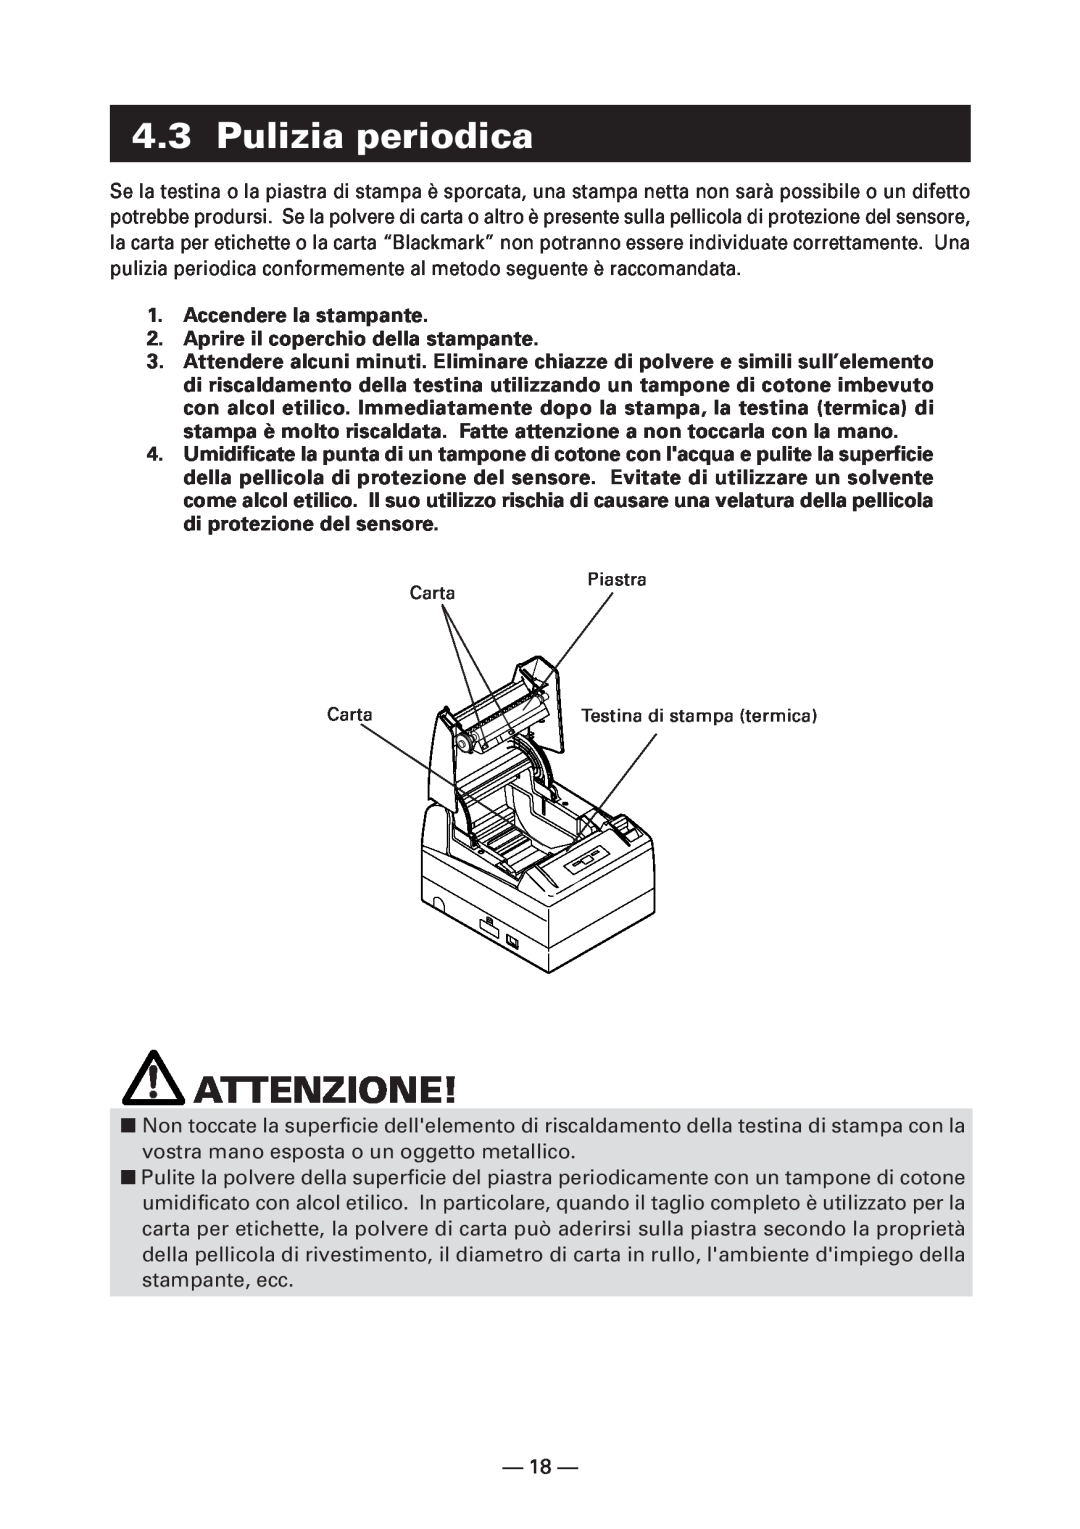 Citizen Systems CT-S4000L Pulizia periodica, Accendere la stampante 2. Aprire il coperchio della stampante, Attenzione 